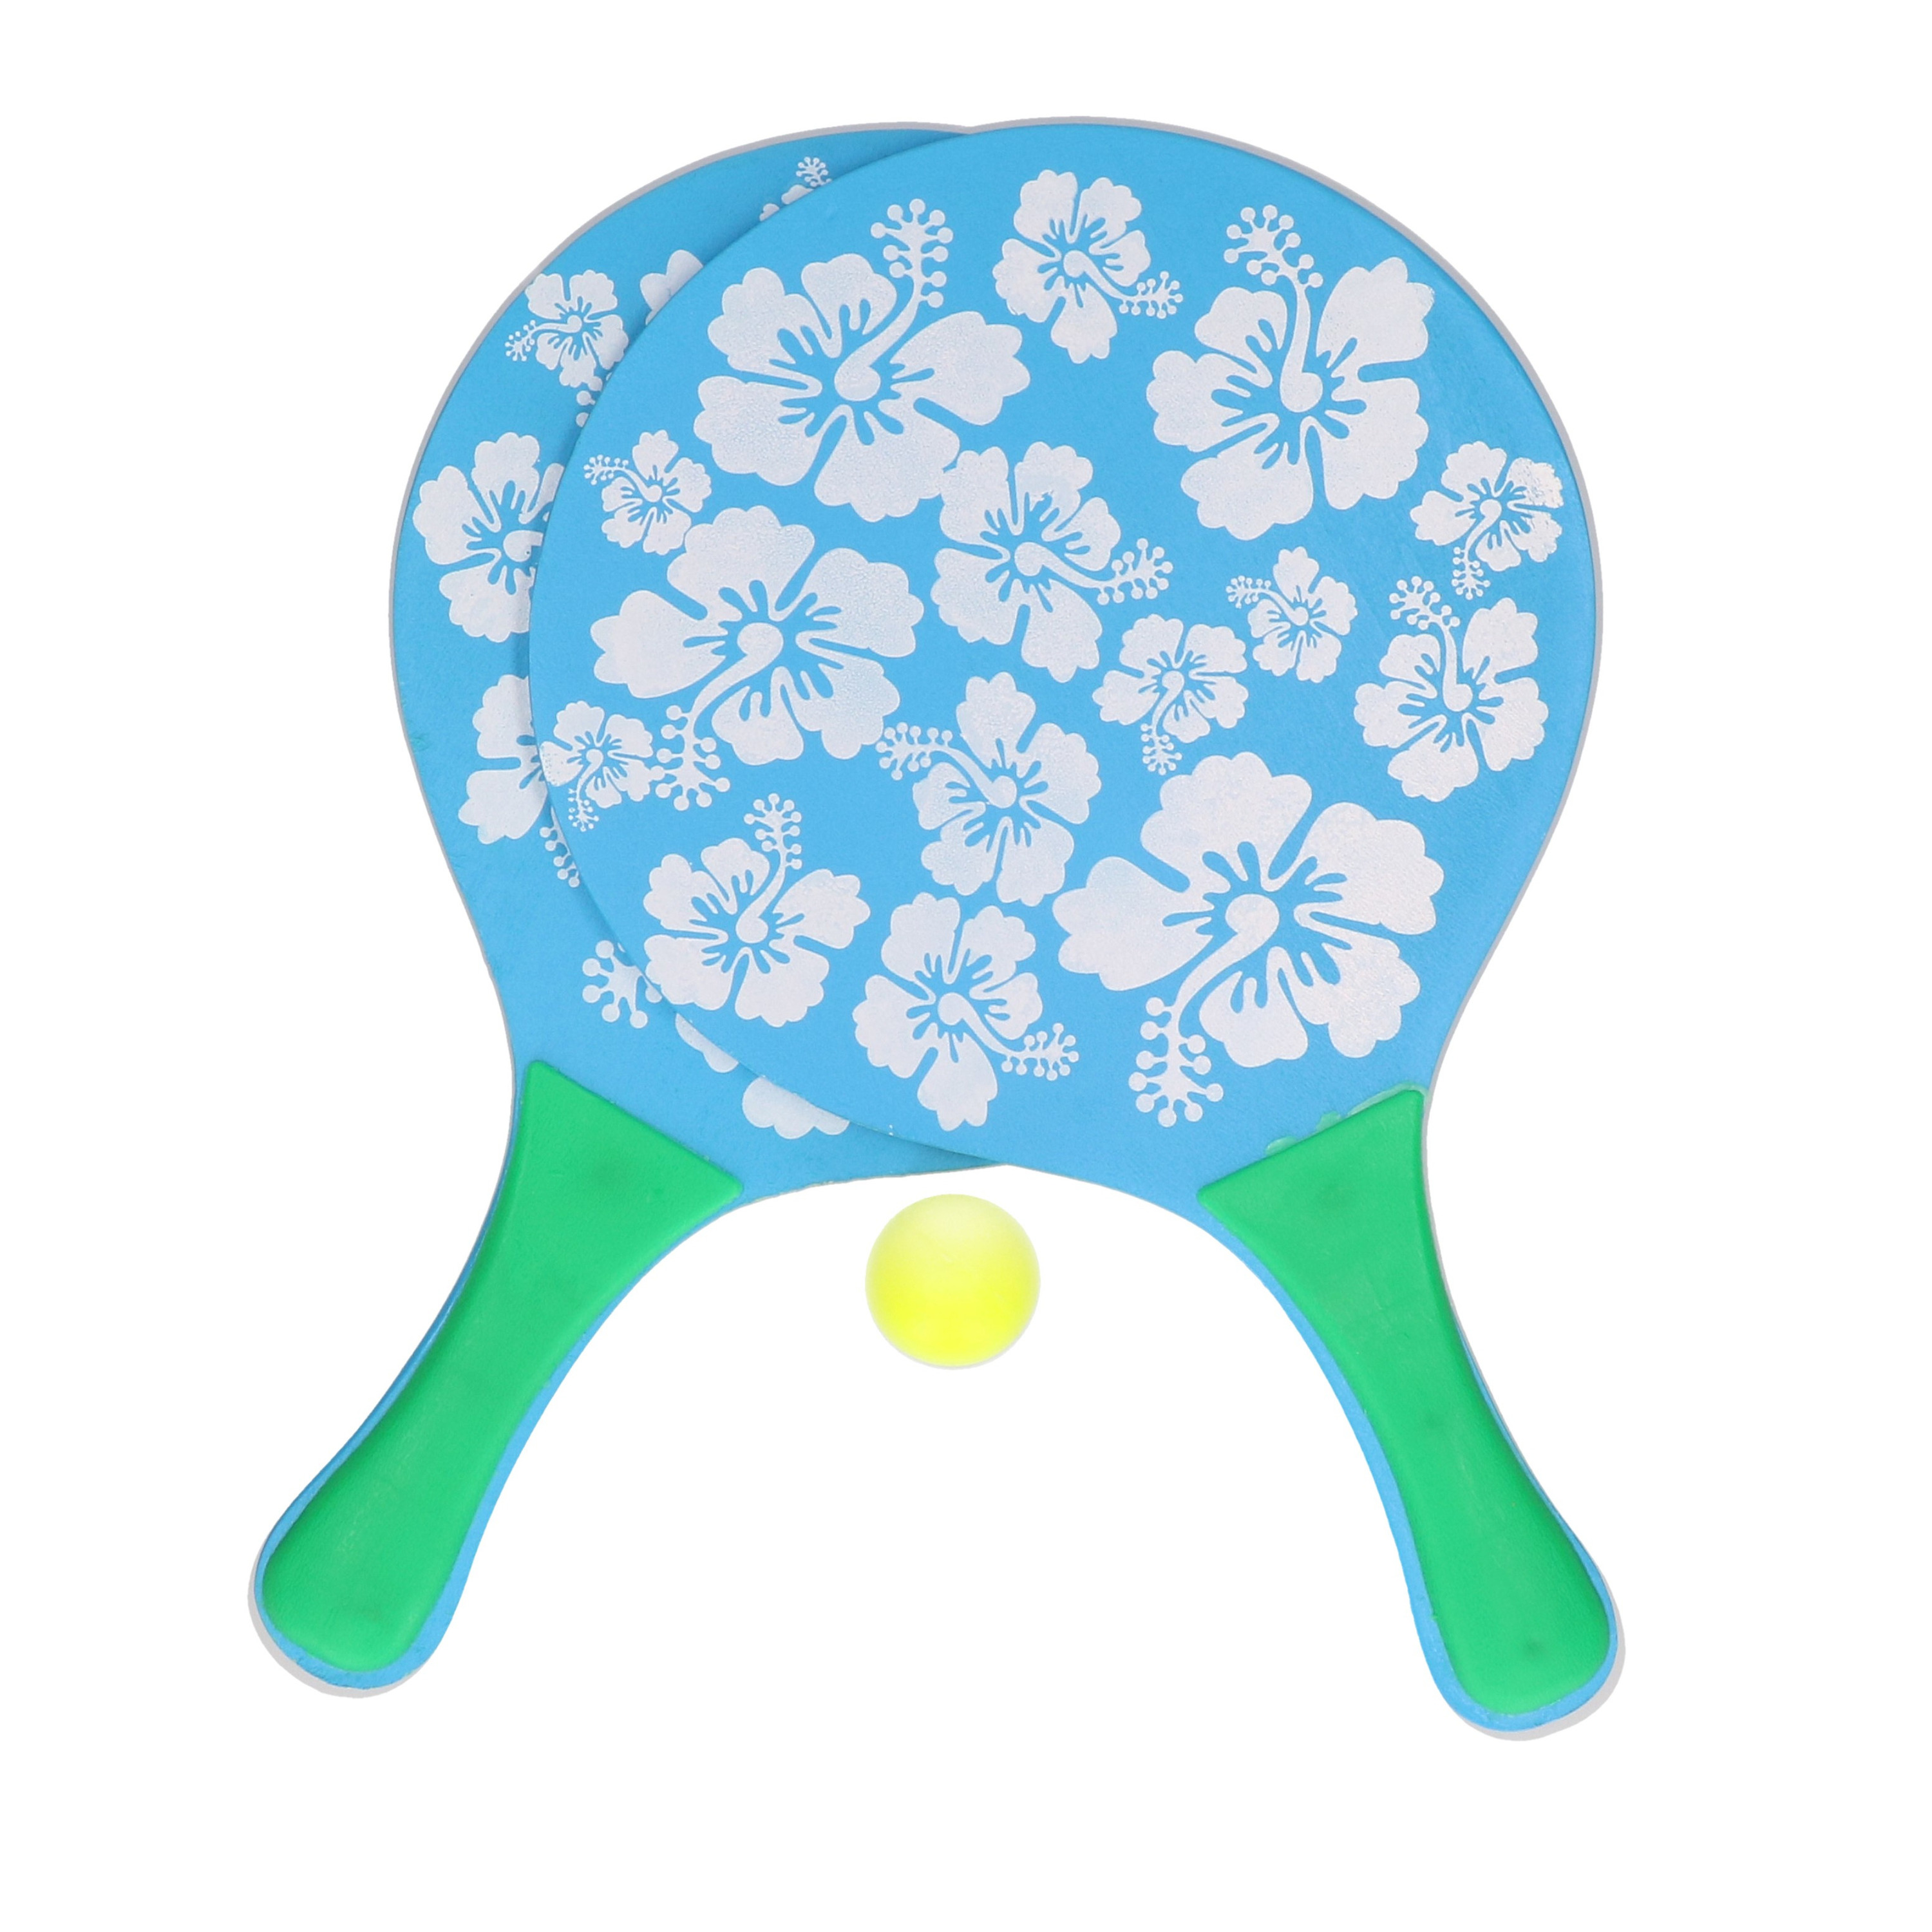 Blauwe beachball set met bloemenprint buitenspeelgoed